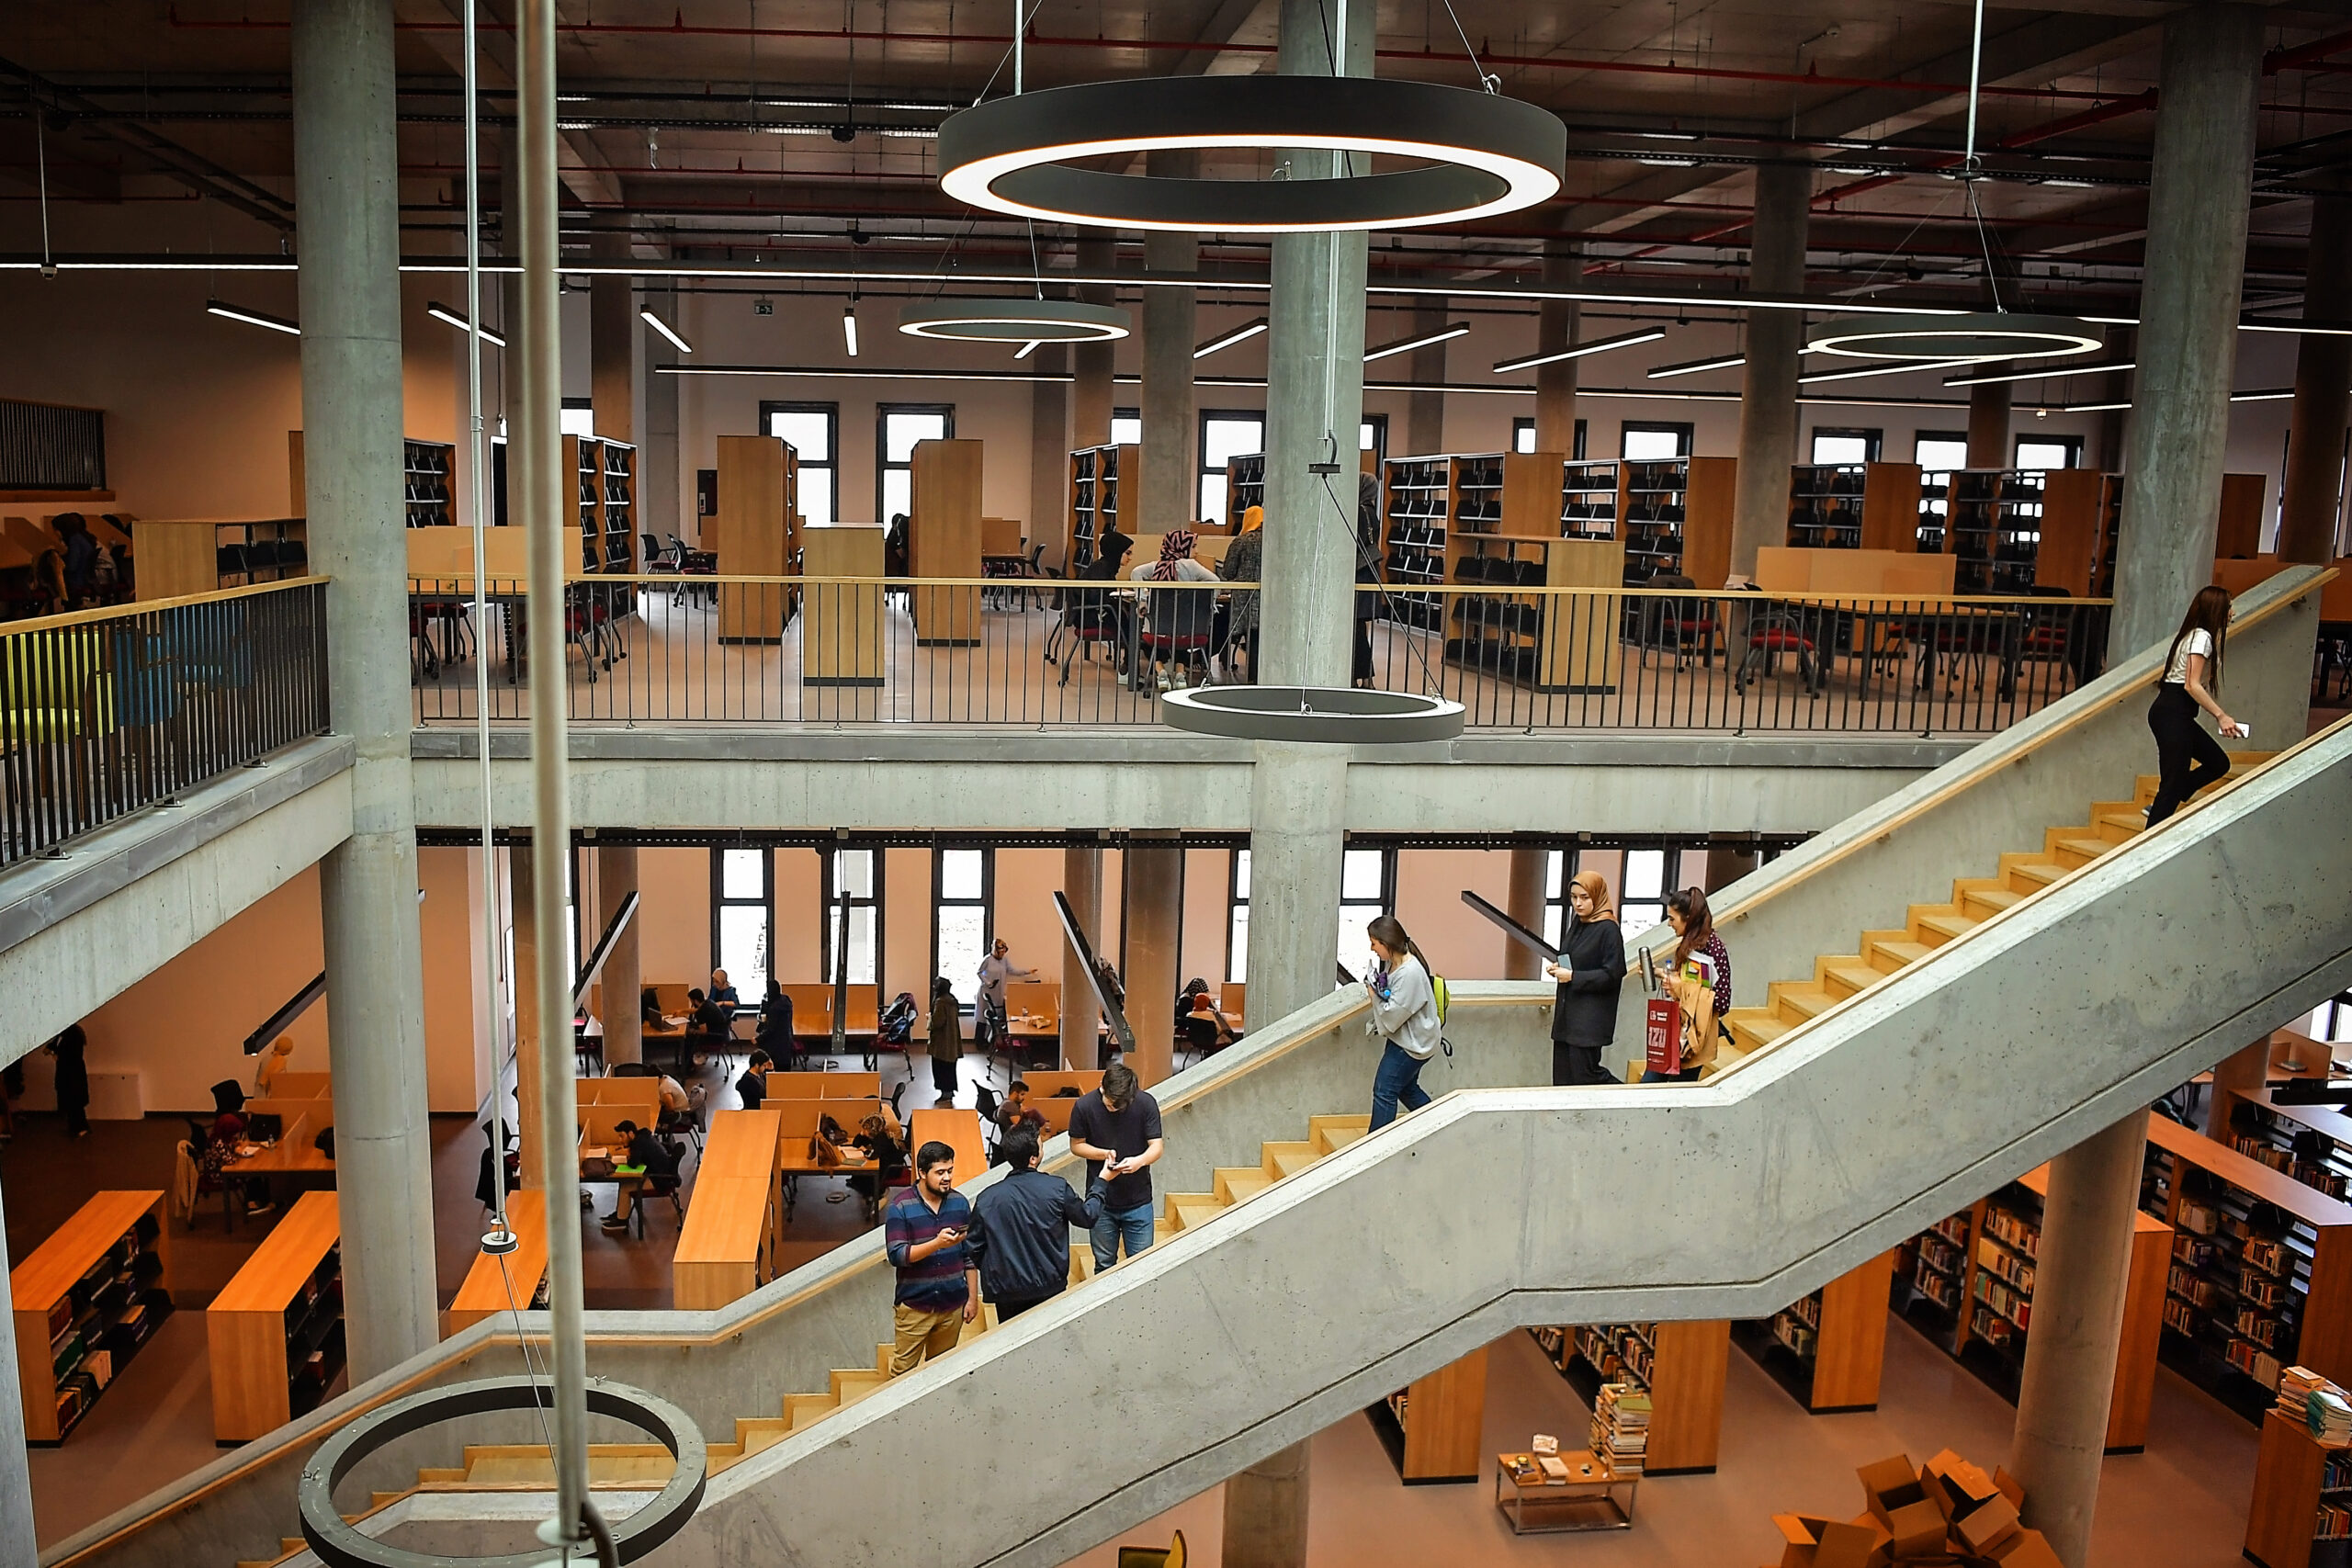 zaim universitesi find and study 8 scaled - Istanbul Sabahattin Zaim University